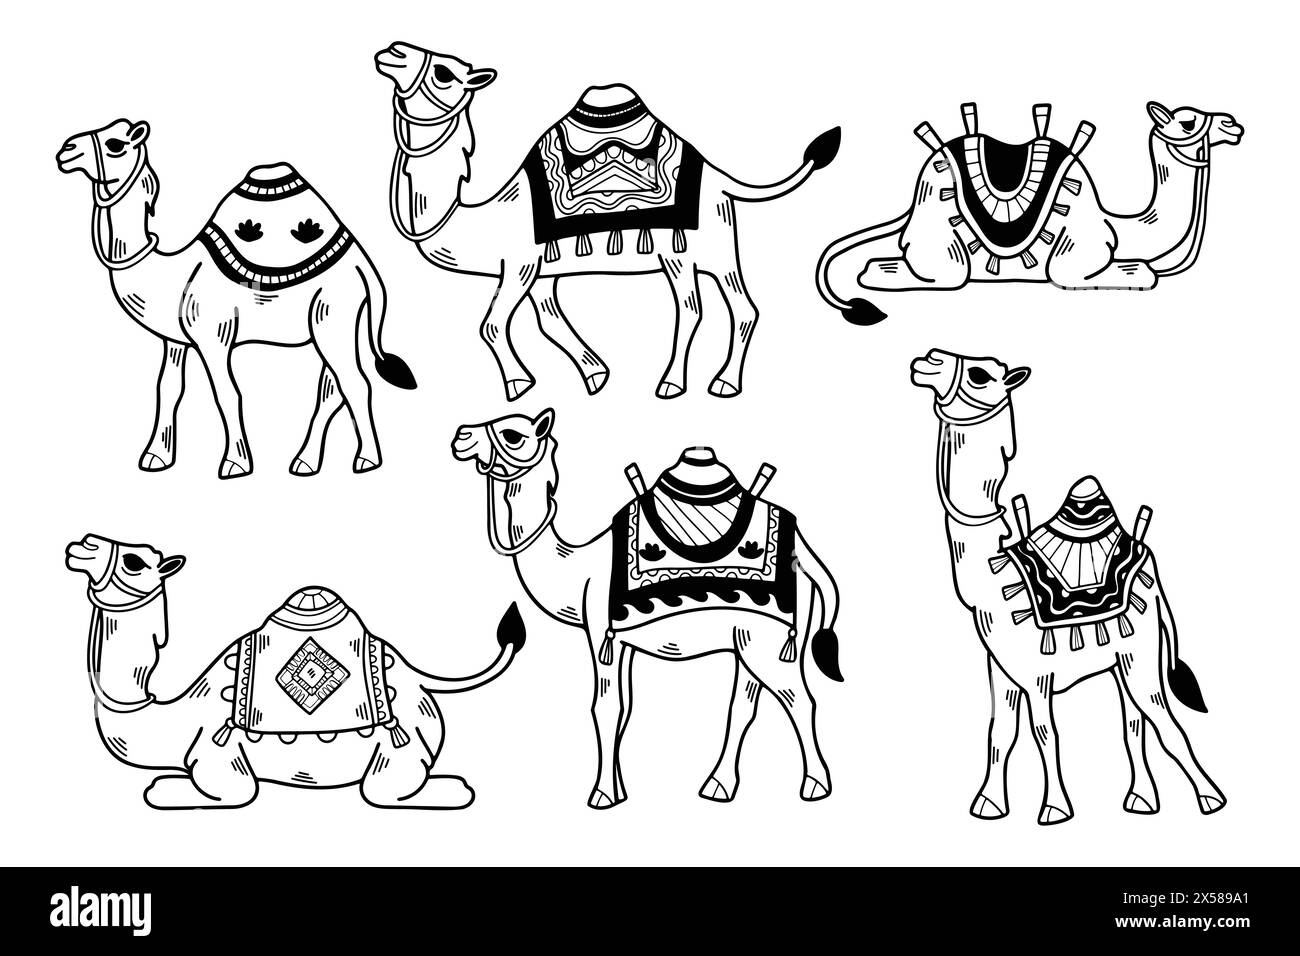 Un ensemble de dessins en noir et blanc de chameaux avec différentes couvertures colorées. Les chameaux sont tous de tailles différentes et sont assis ou debout dans divers Illustration de Vecteur